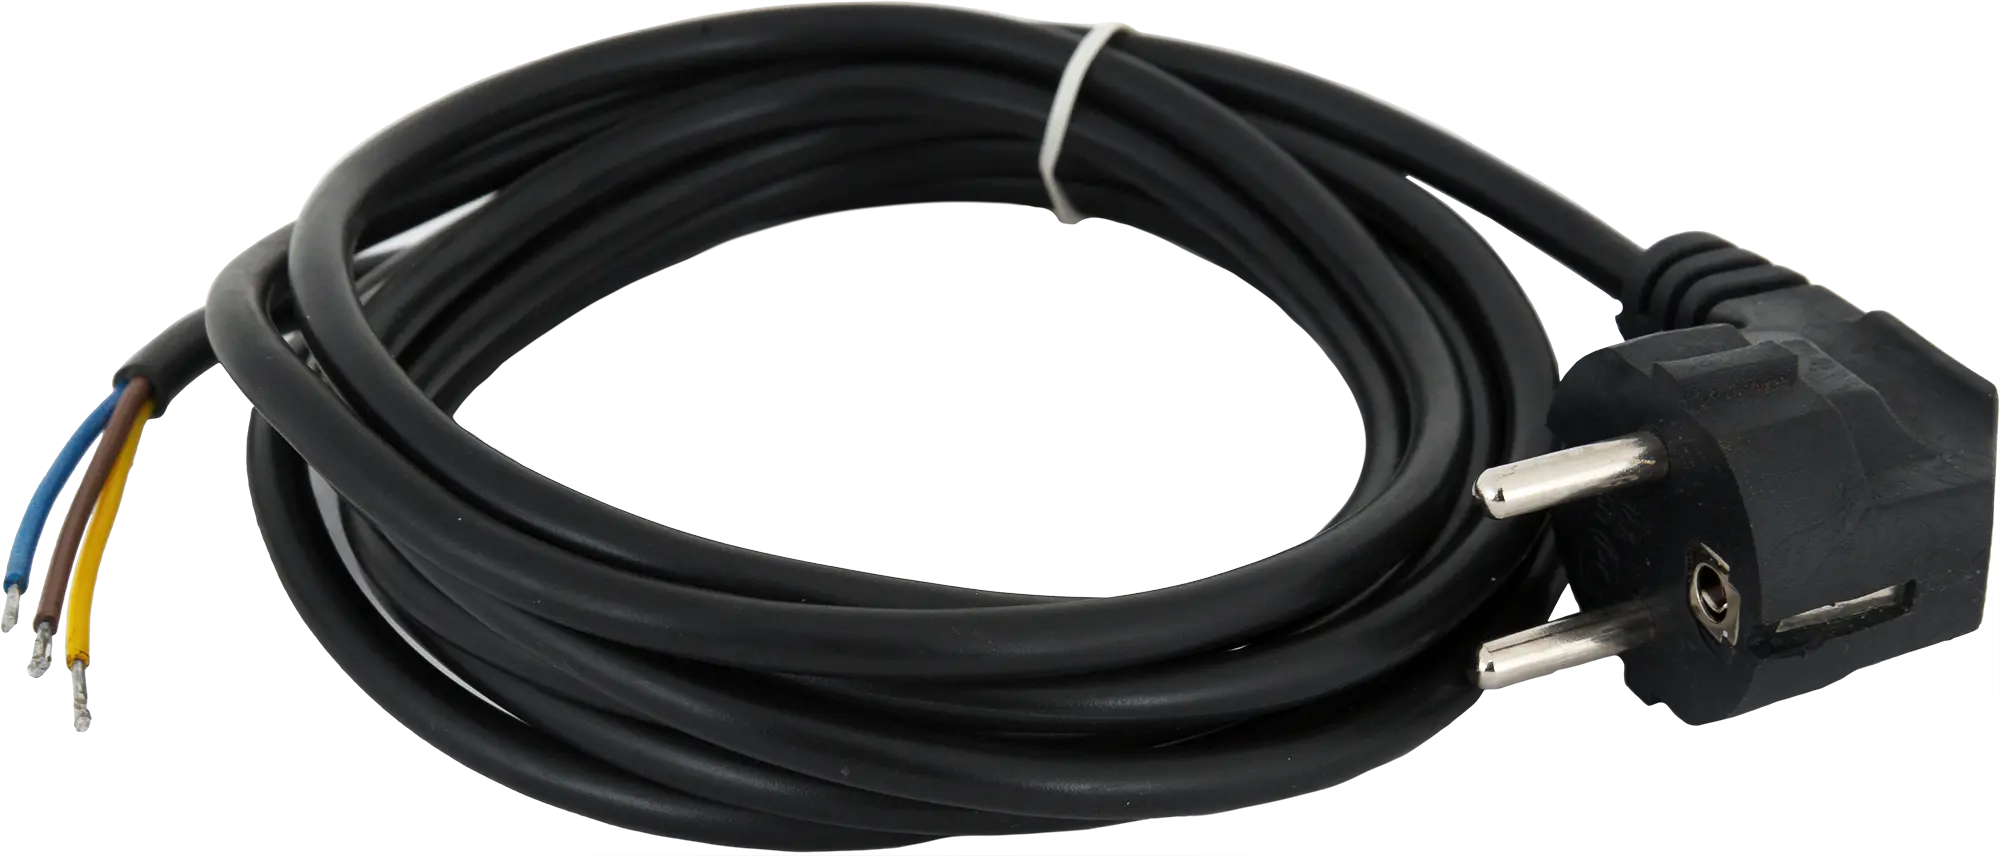 Шнур сетевой с заземлением 10 A 3 м цвет чёрный шнур сетевой с заземлением 10 a 3 м чёрный